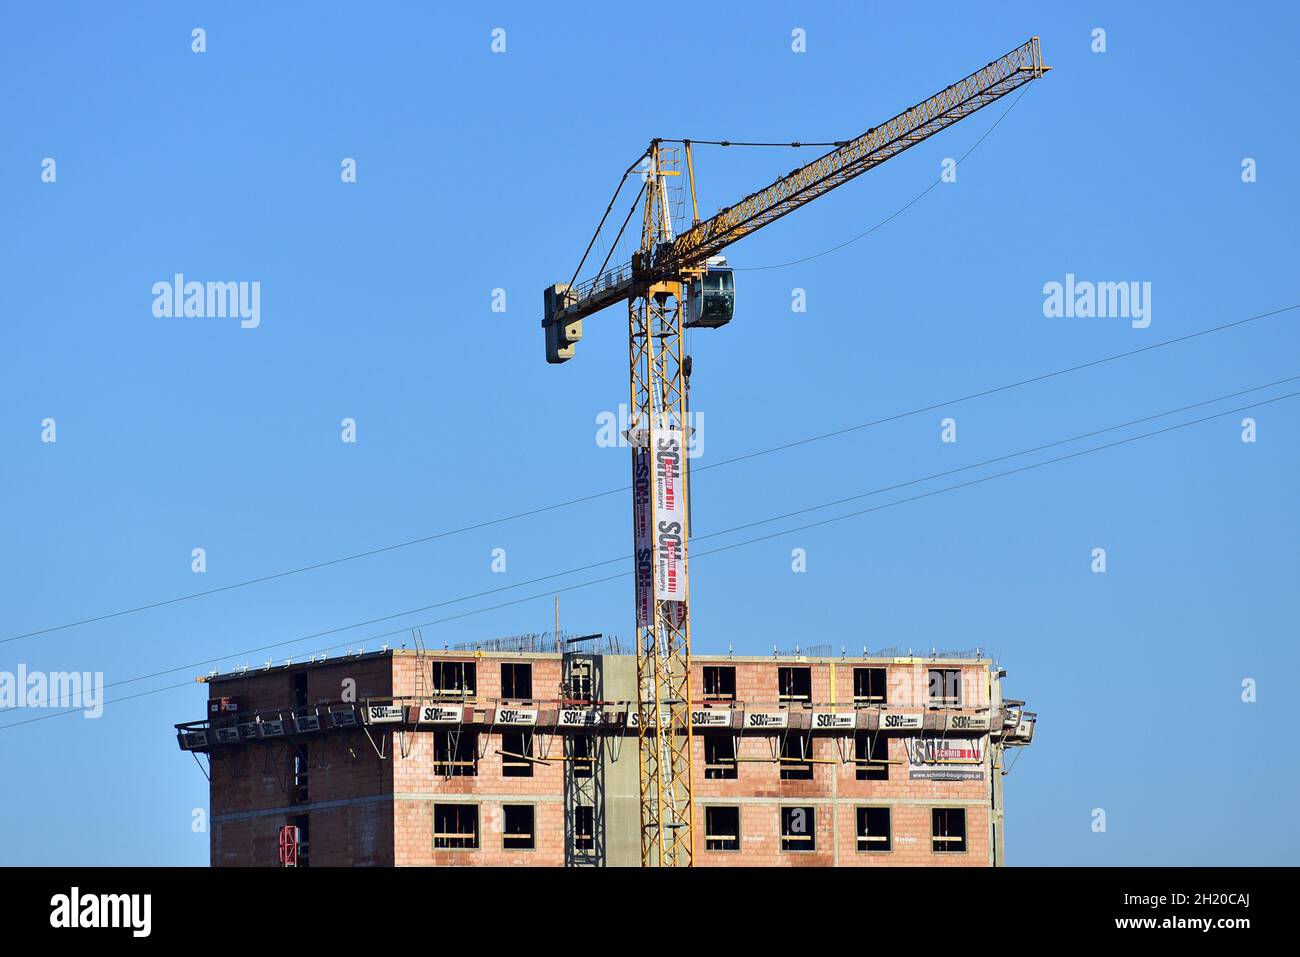 Ein Kran vor der Baustelle eines Hochhauses in Österreich, Europa - A crane in front of the construction site of a high-rise building in Austria, Euro Stock Photo